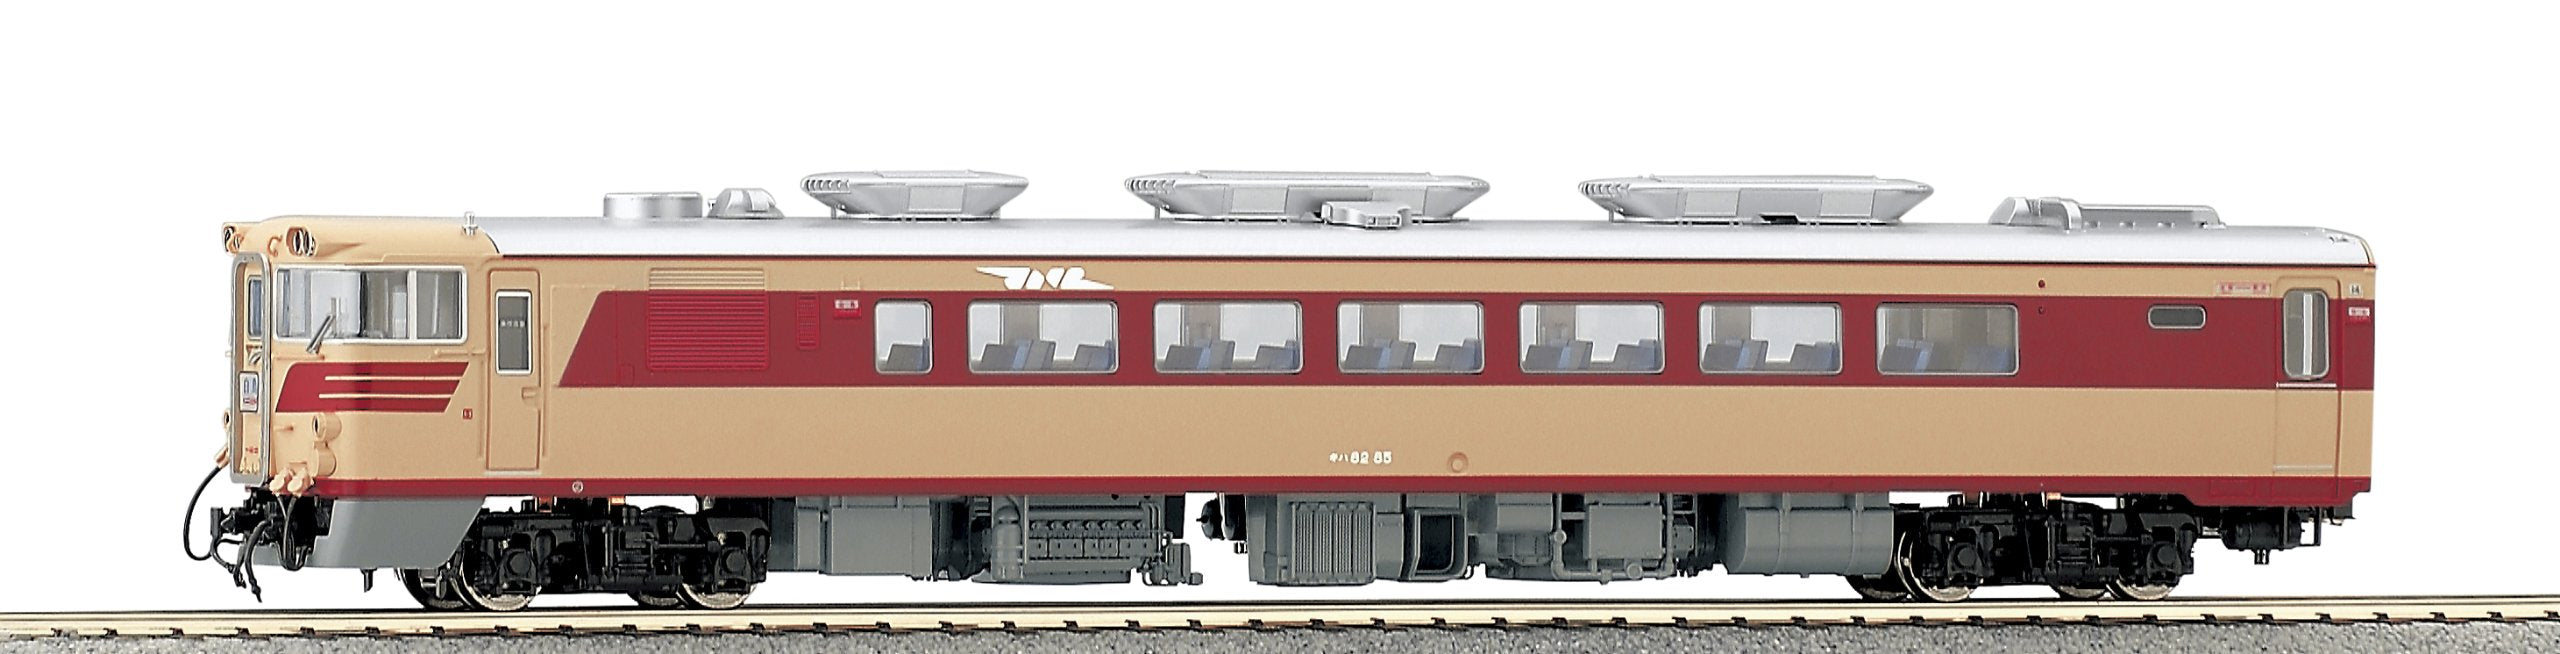 Kato Ho Gauge Kiha82 1-607 Diesel Car - Durable Railway Model